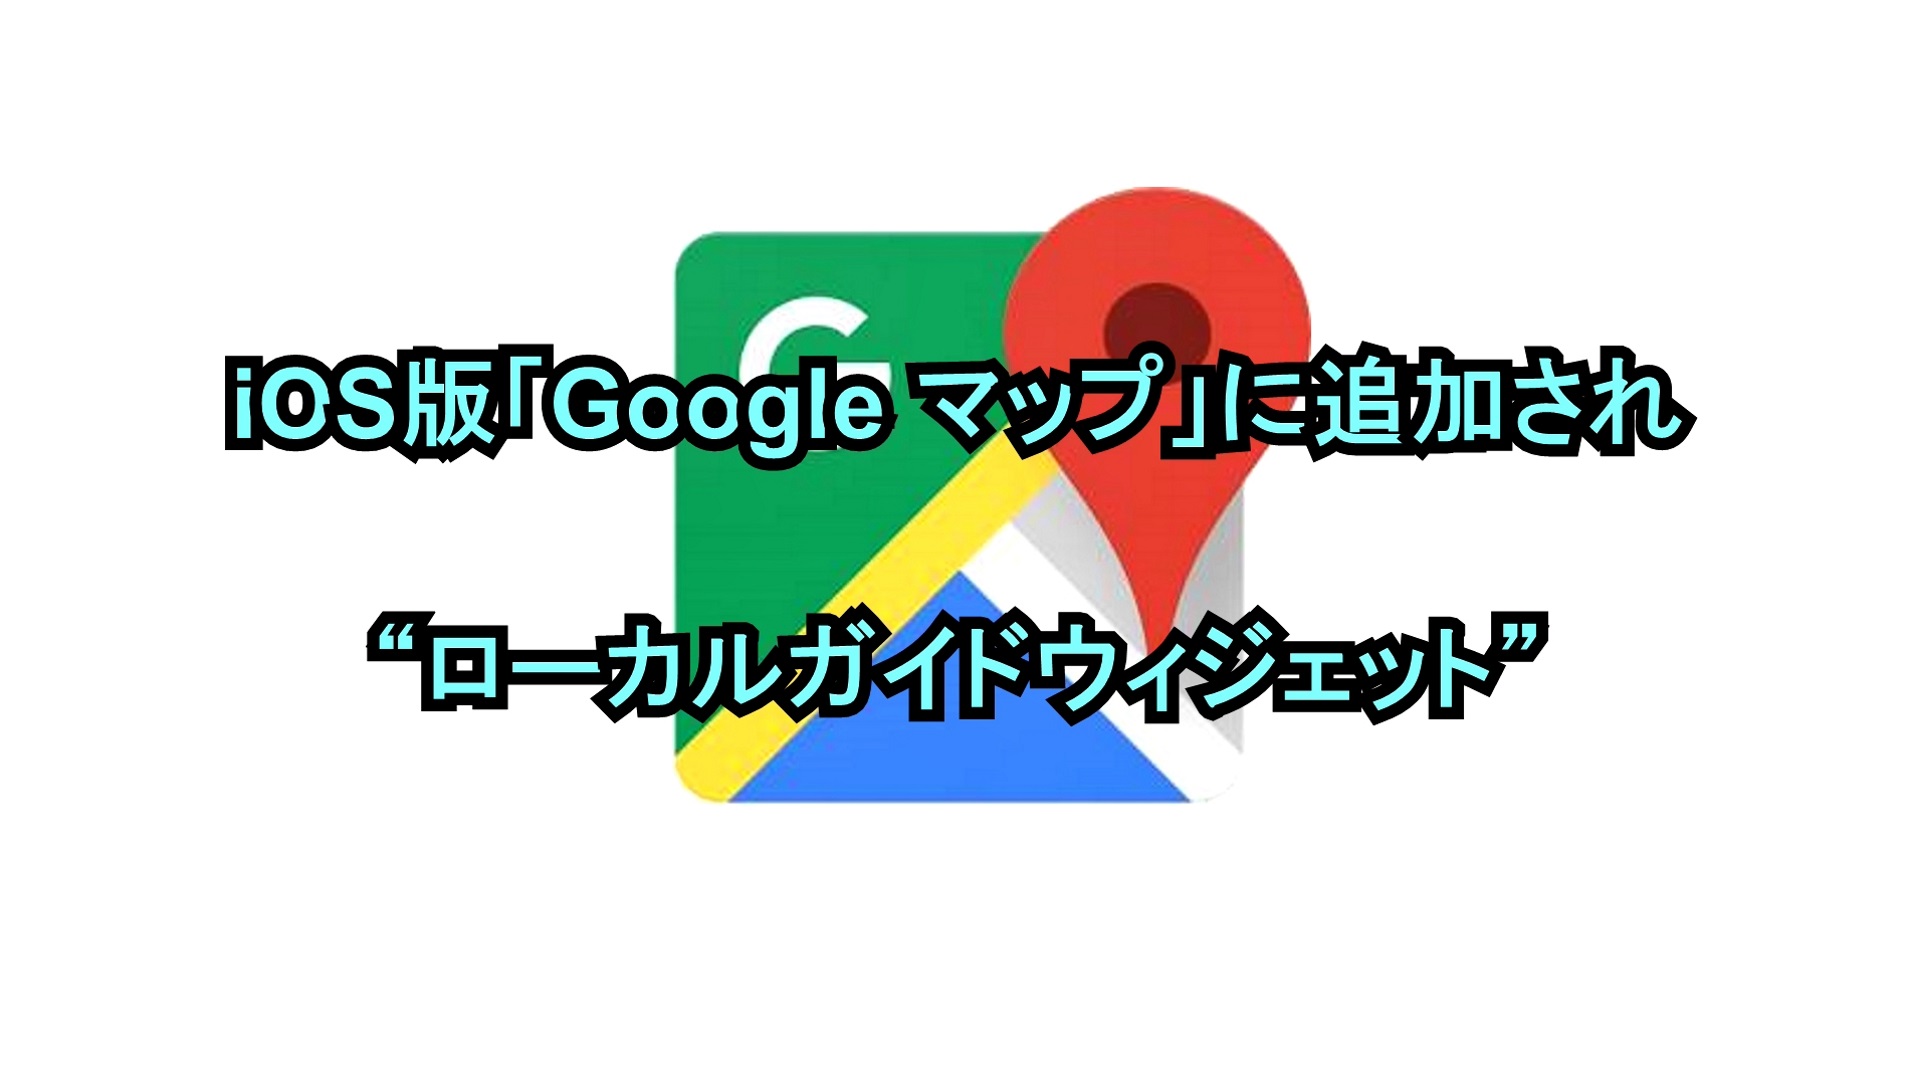 iOS版「Google マップ」に追加された“ローカルガイドウィジェット”